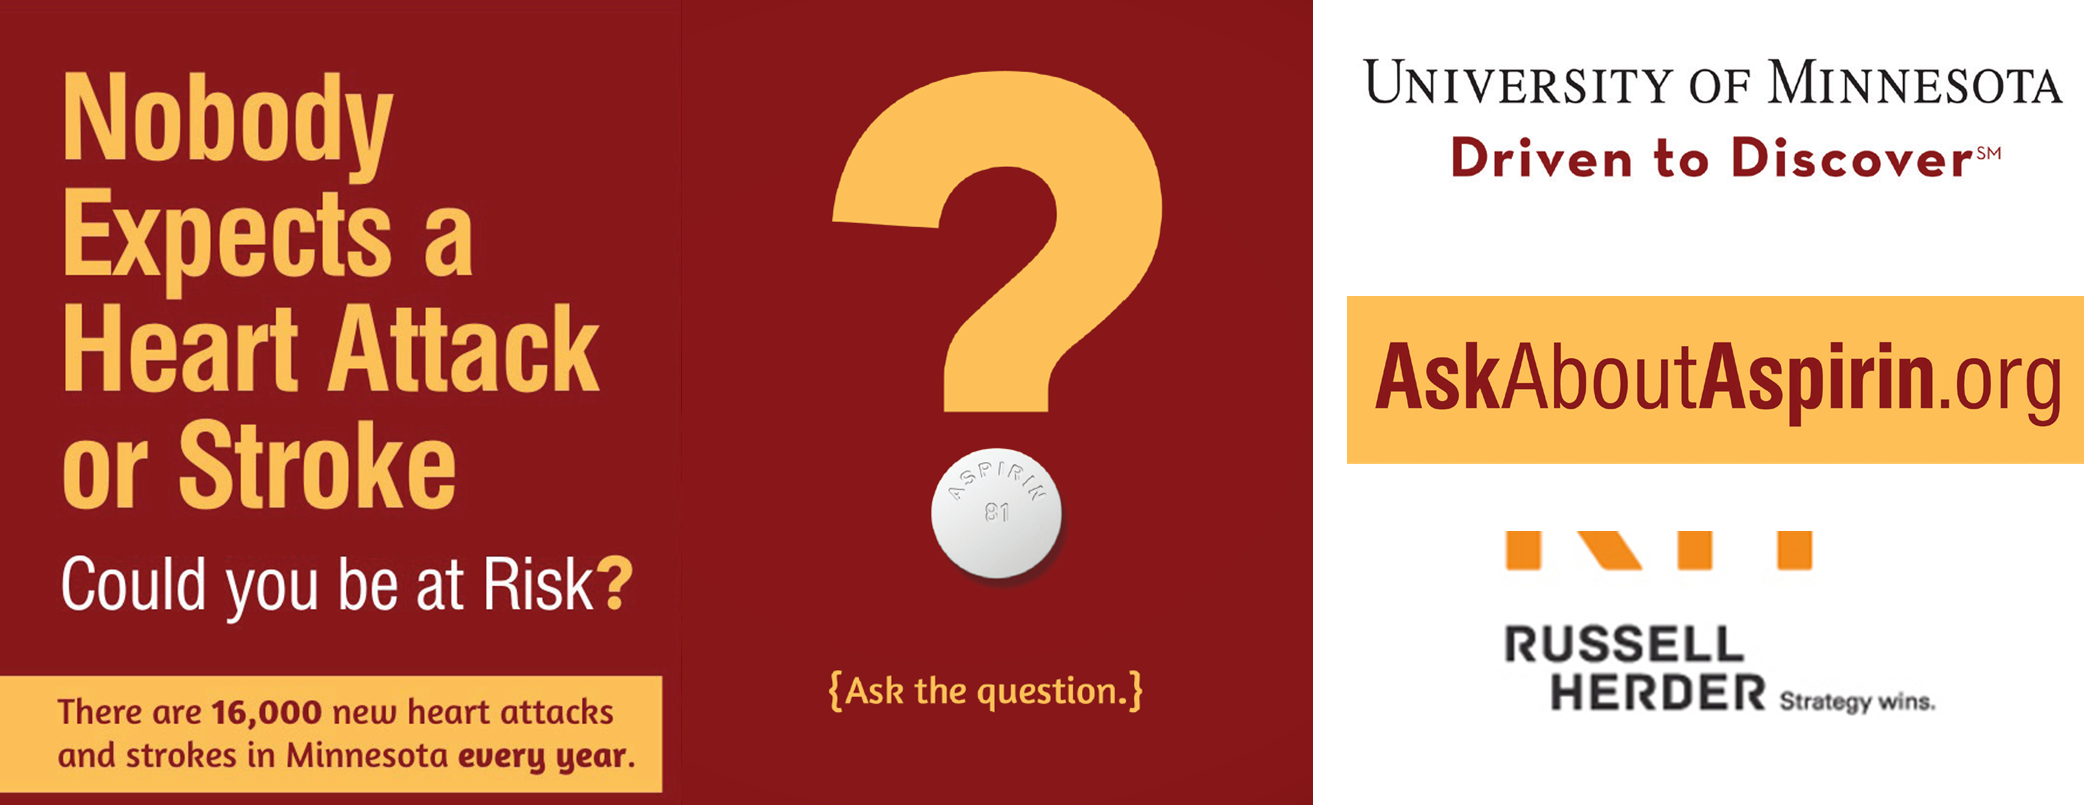 “Ask About Aspirin”- Logo